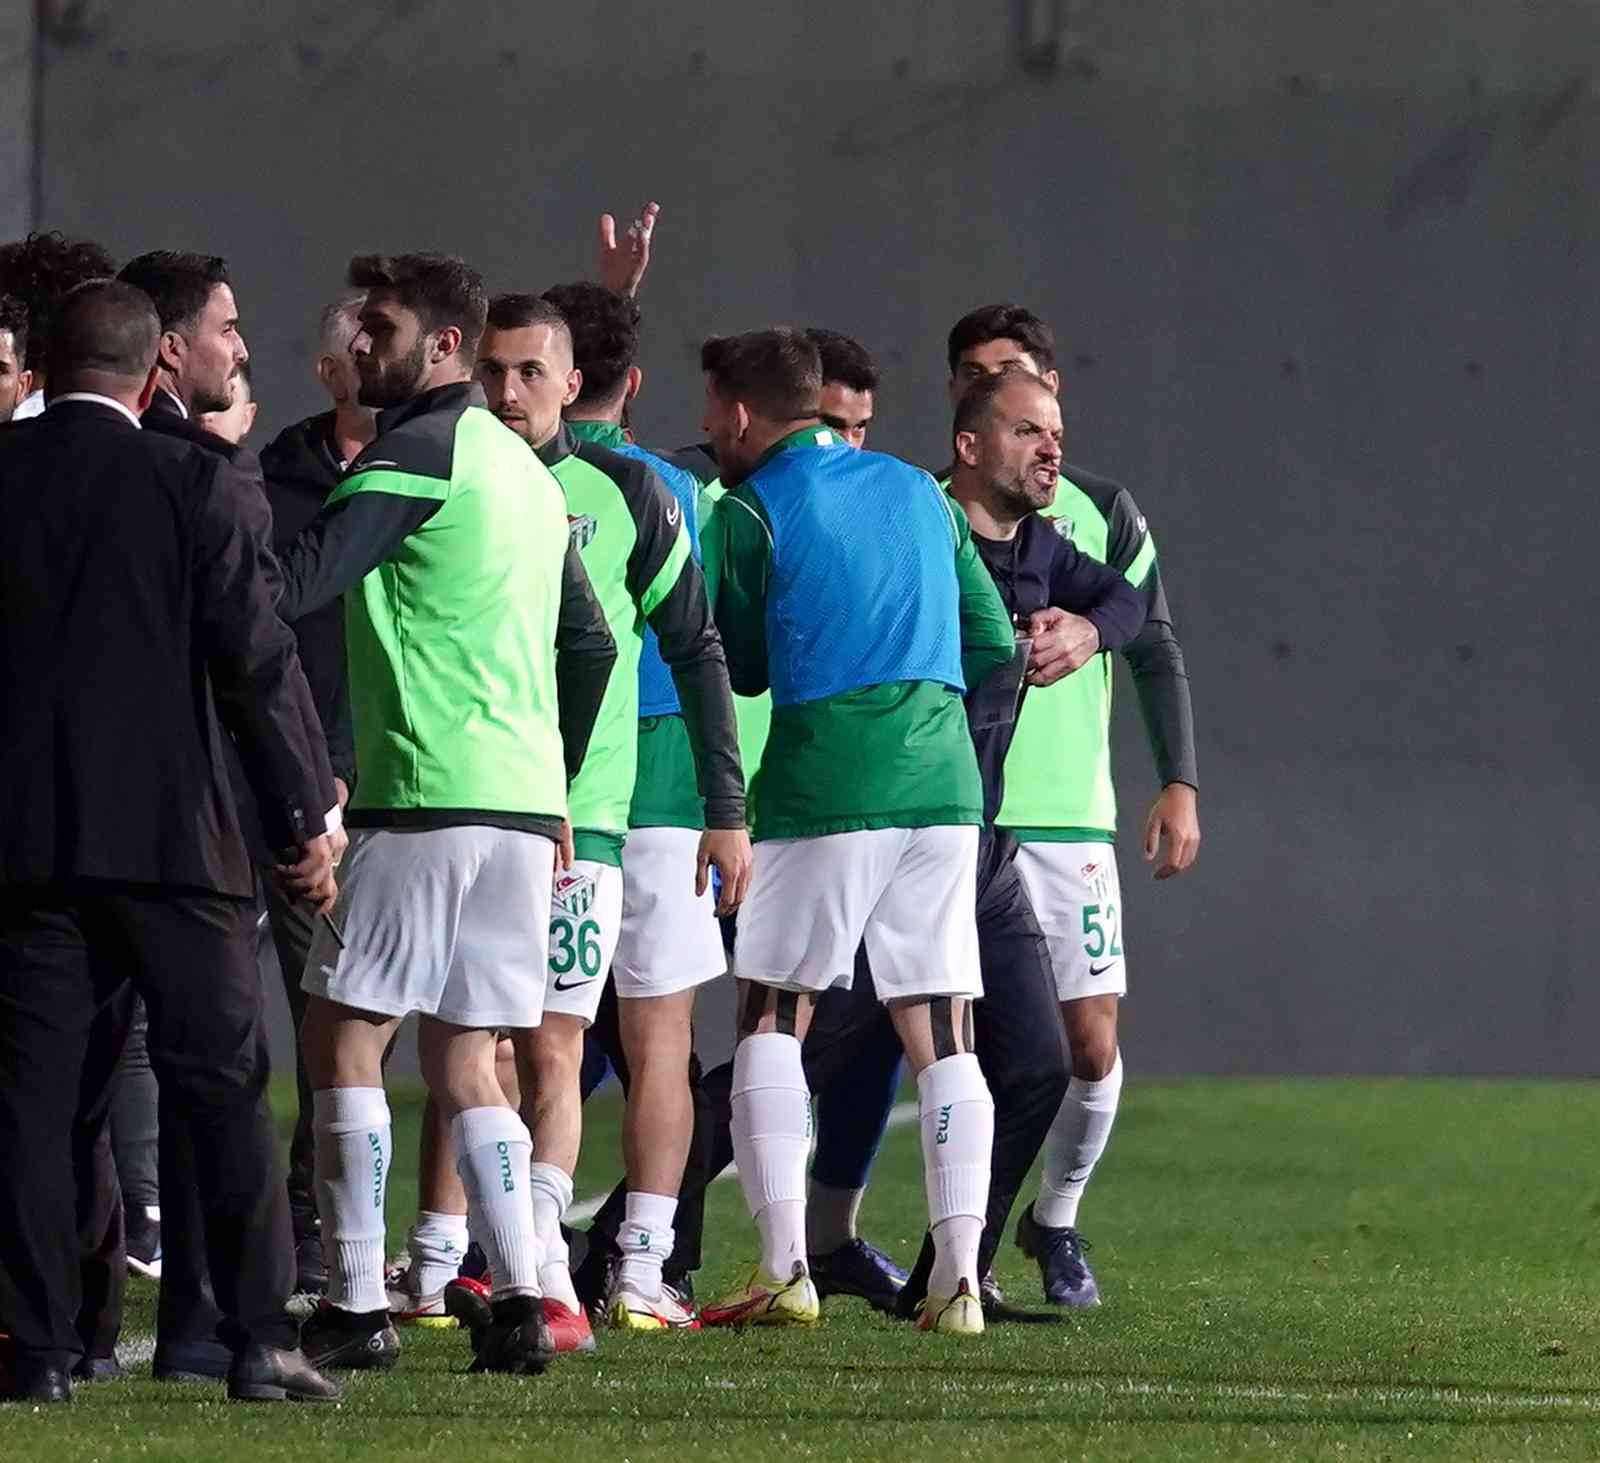 Spor Toto 1. Lig’in 32. haftasında İstanbulspor sahasında karşılaştığı Bursaspor’u 3-1 mağlup etti. Maçtan dakikalar 7. dakikada sağ kanattan ...